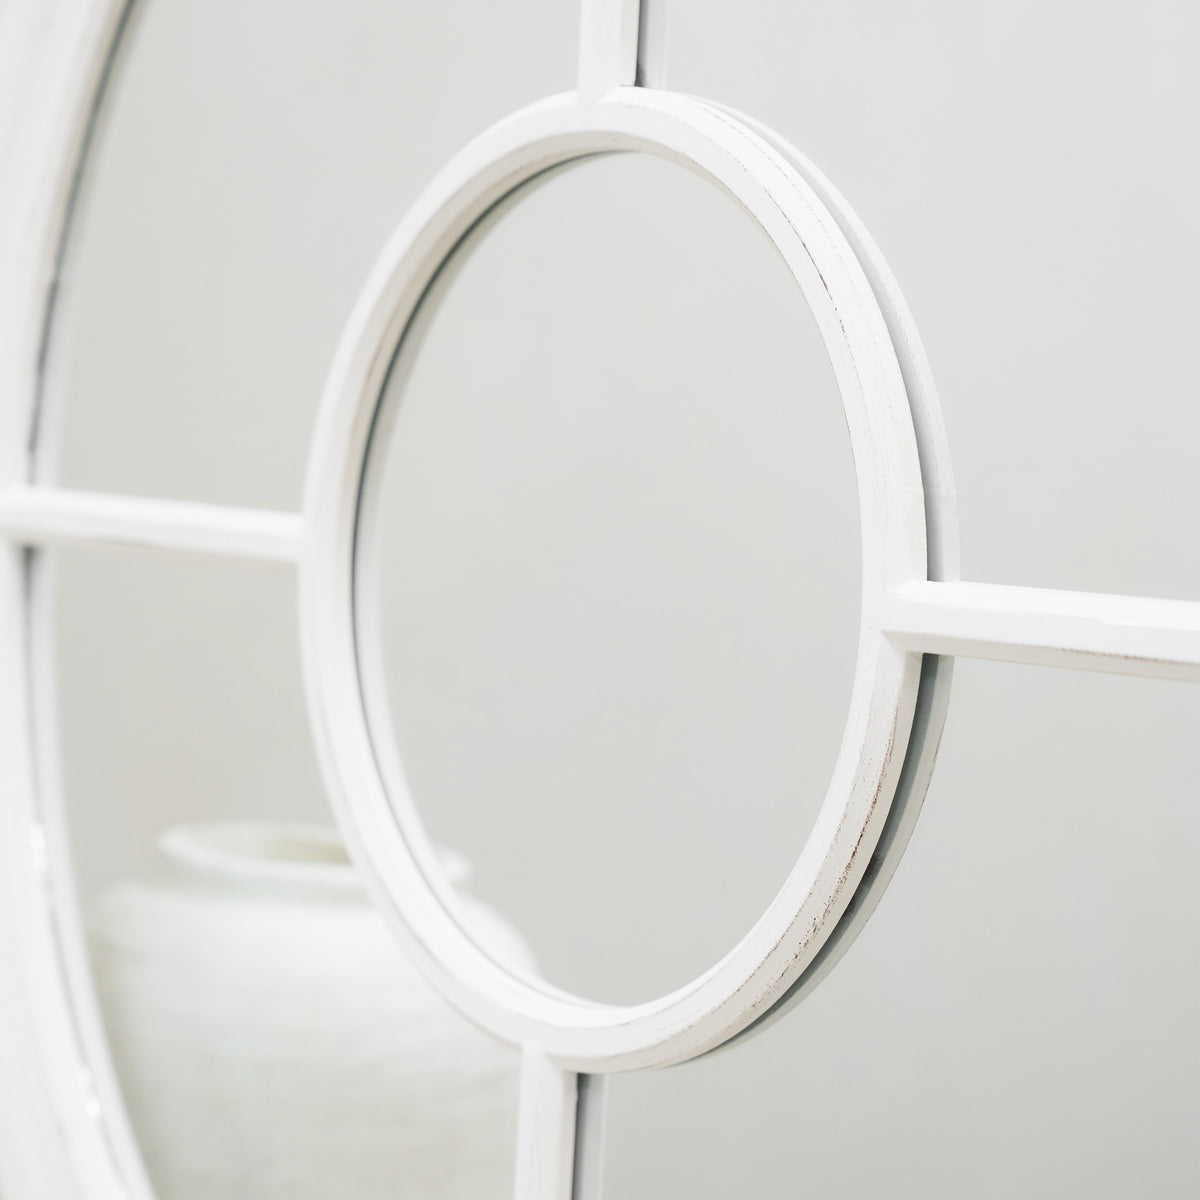 Rennes - White Shabby Chic Round Window Mirror 90cm x 90cm